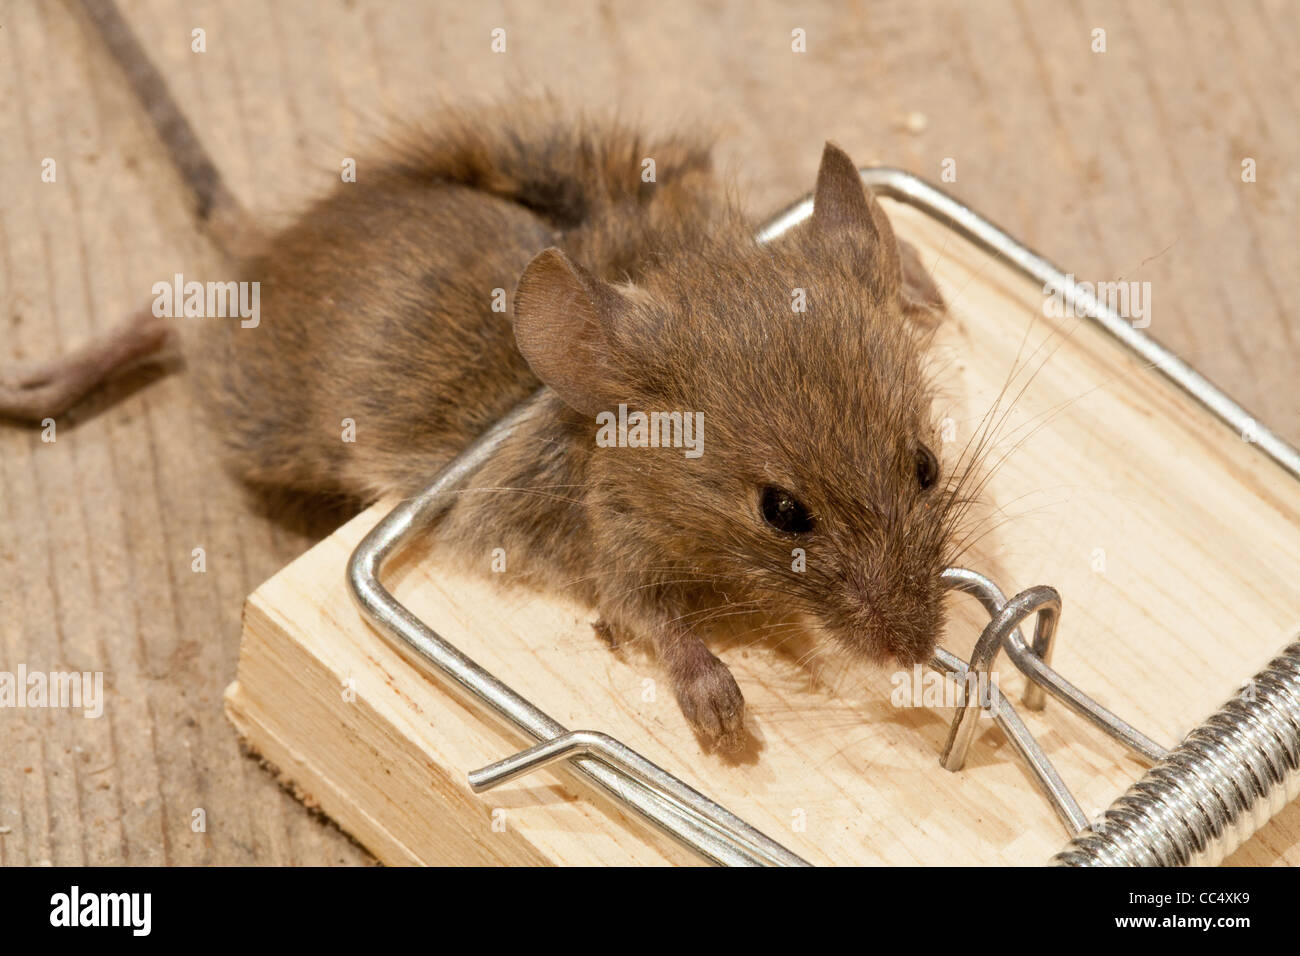 Topo morto nella trappola del mouse su tavoloni Foto Stock